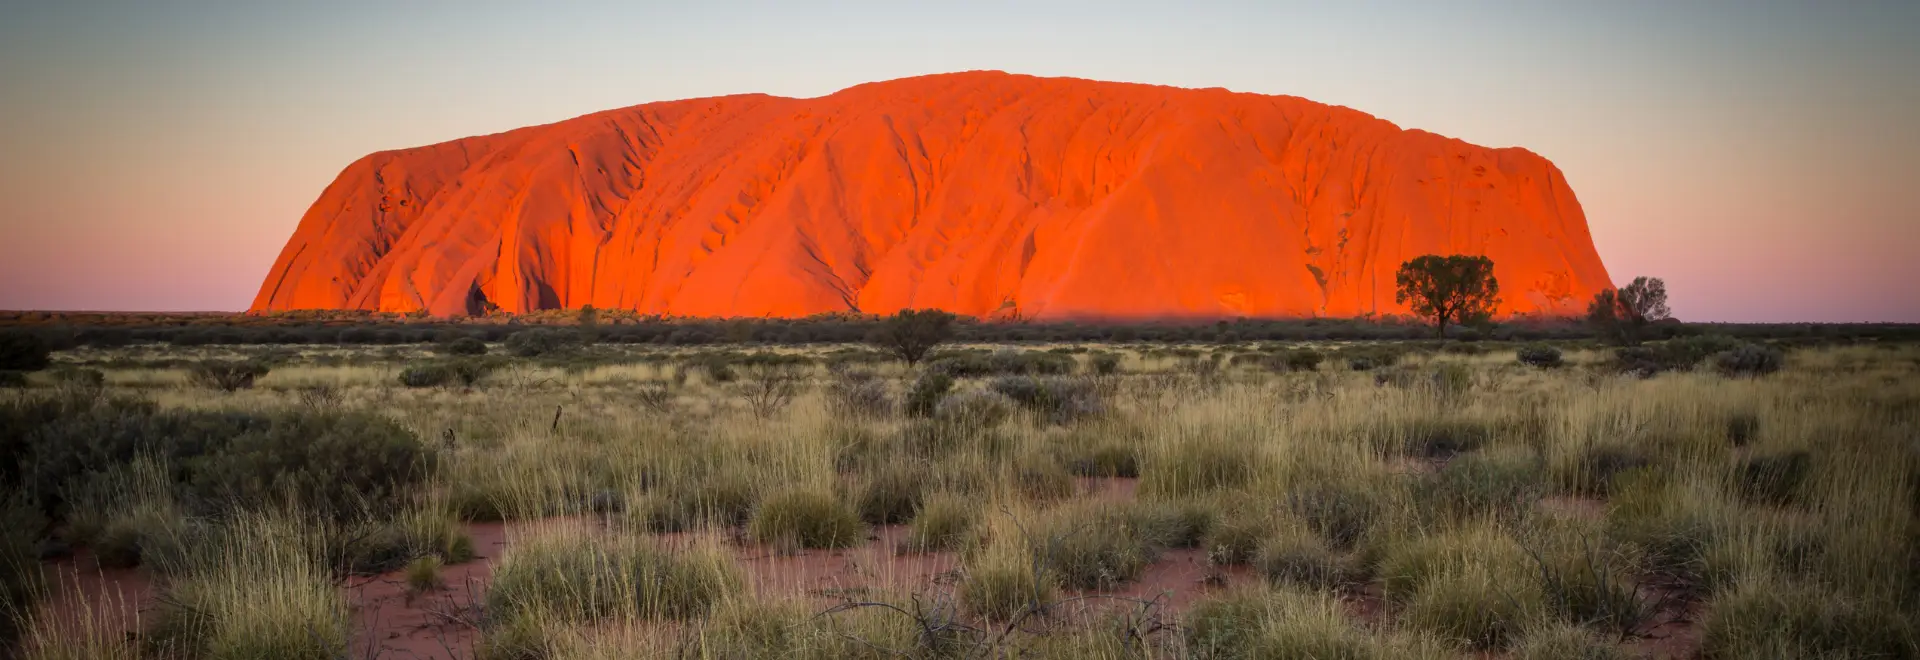 Paște în Australia cu sacrul Uluru și Noua Zeelandă